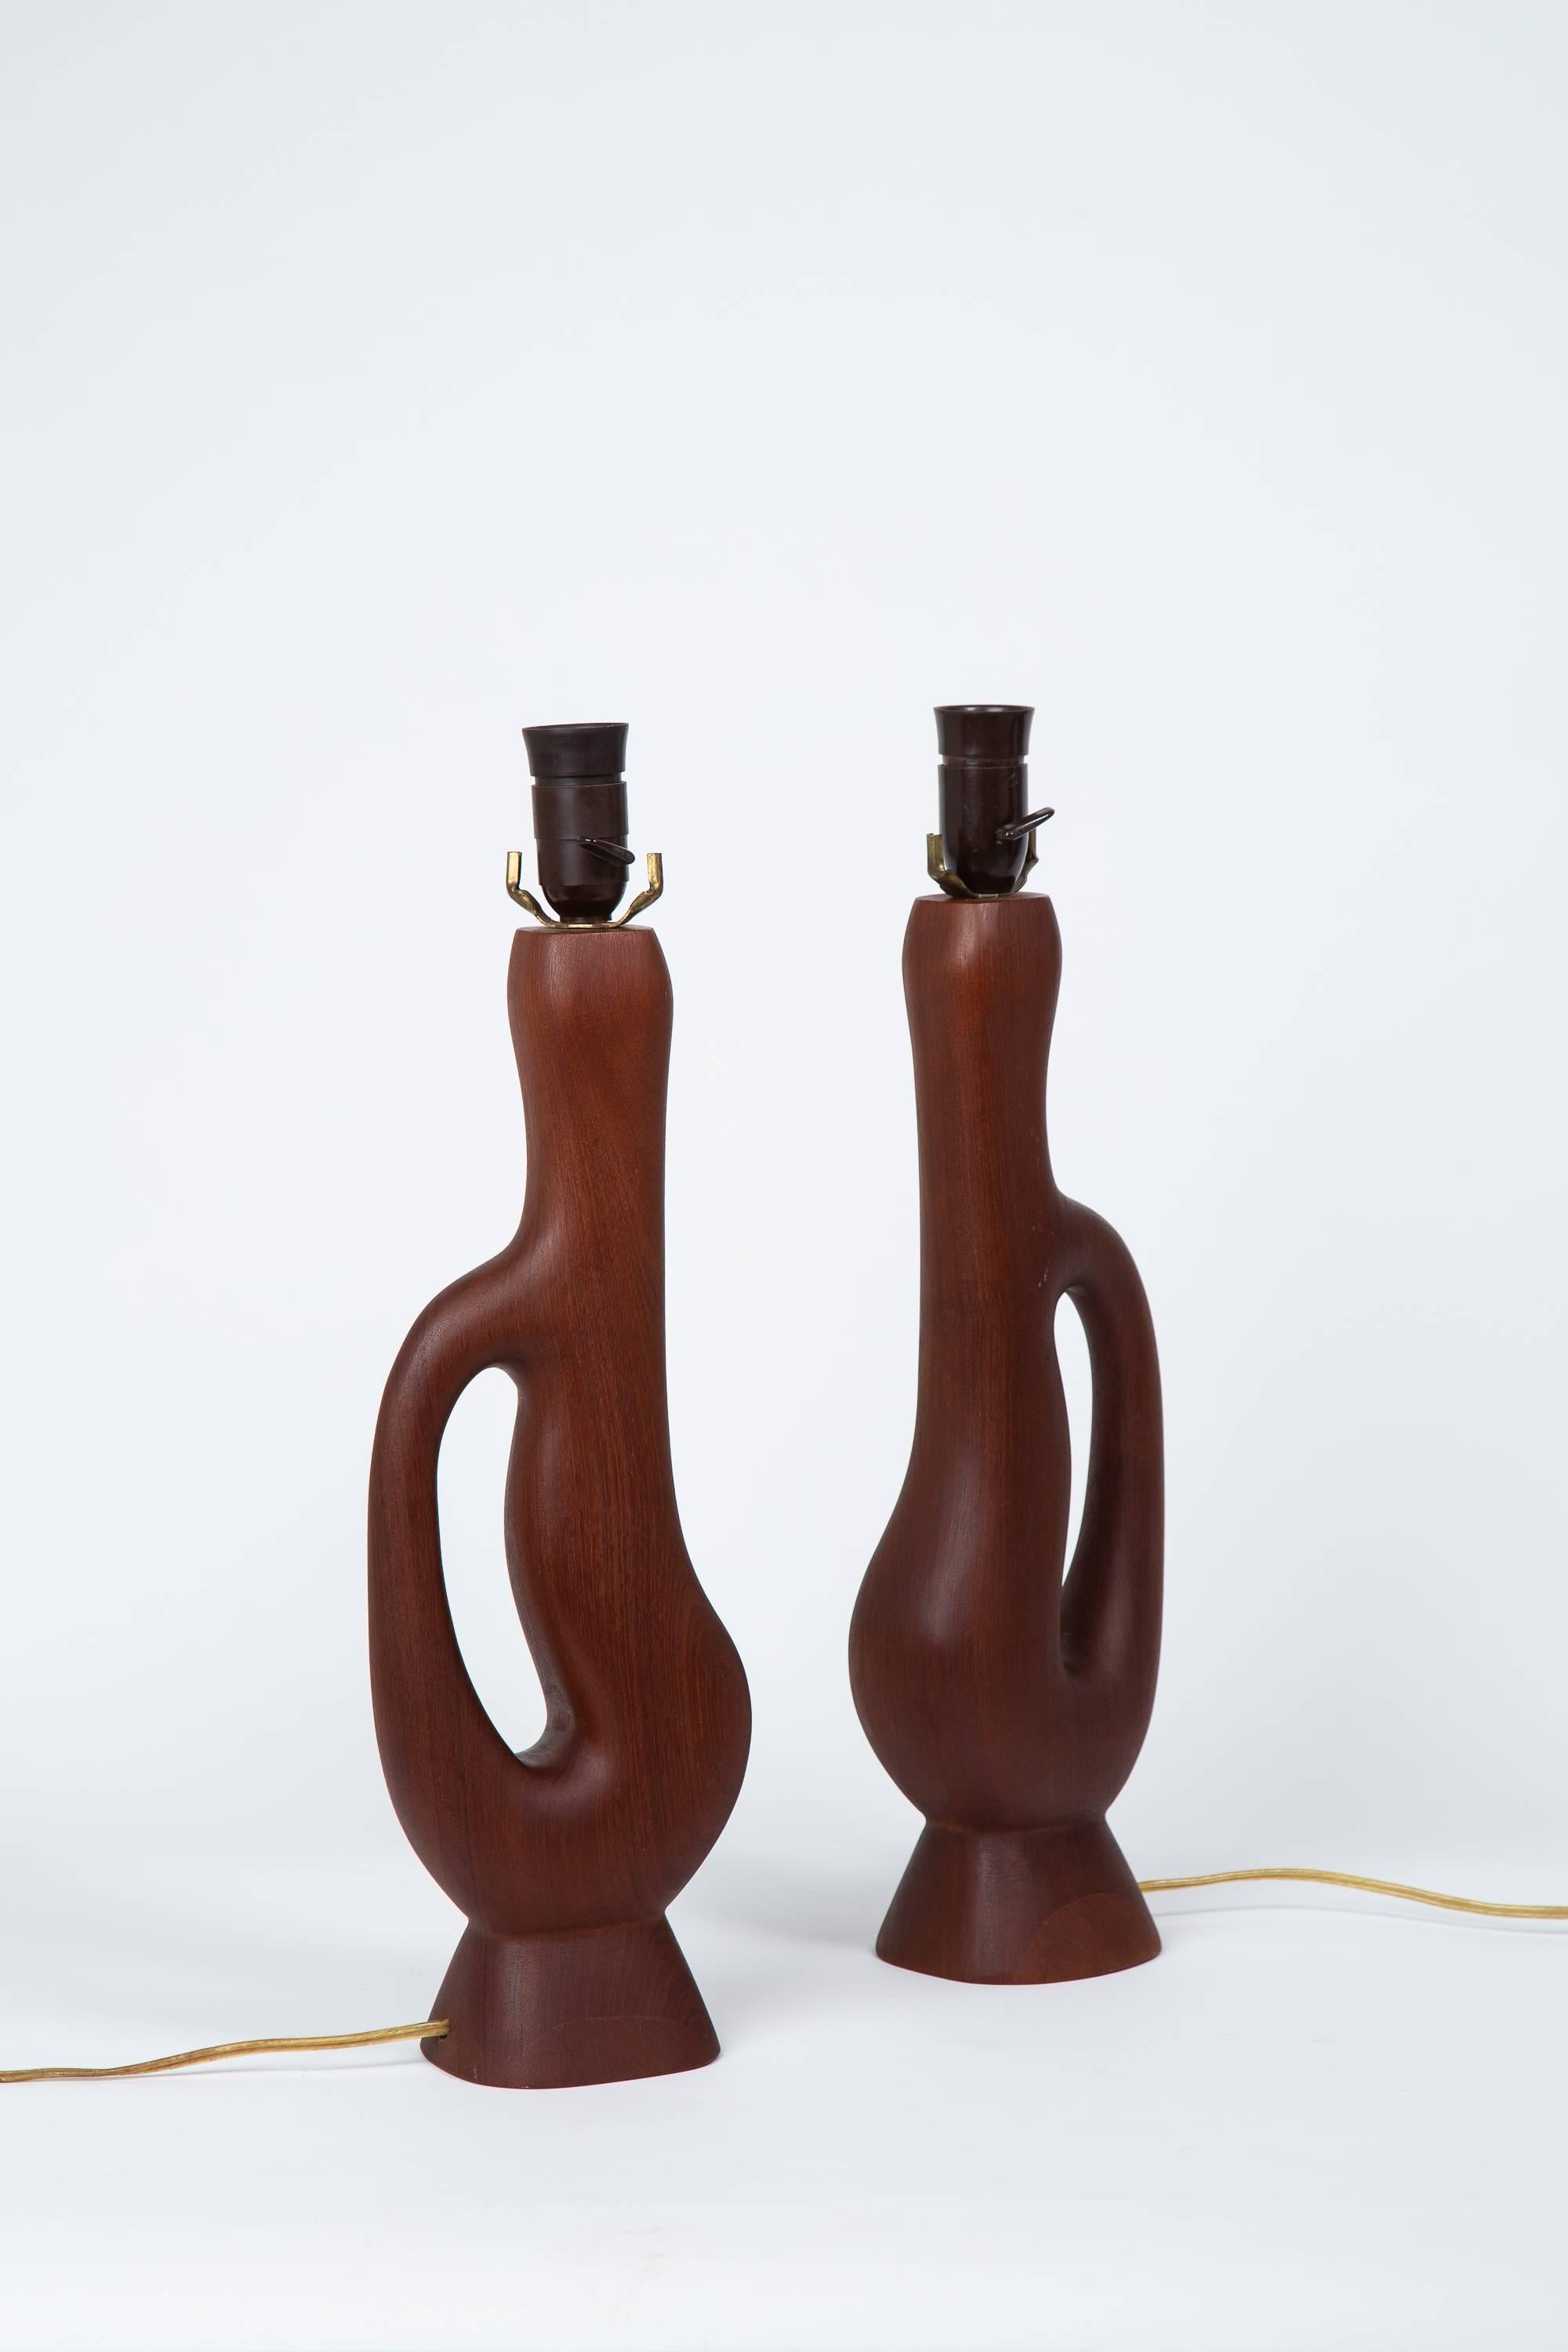 Ein Paar handgefertigte Teakholzlampen in organischer Form mit original gewebten Lampenschirmen. Steckdosen und Lichtschalter aus Bakelit. Gesamthöhe 34,5 